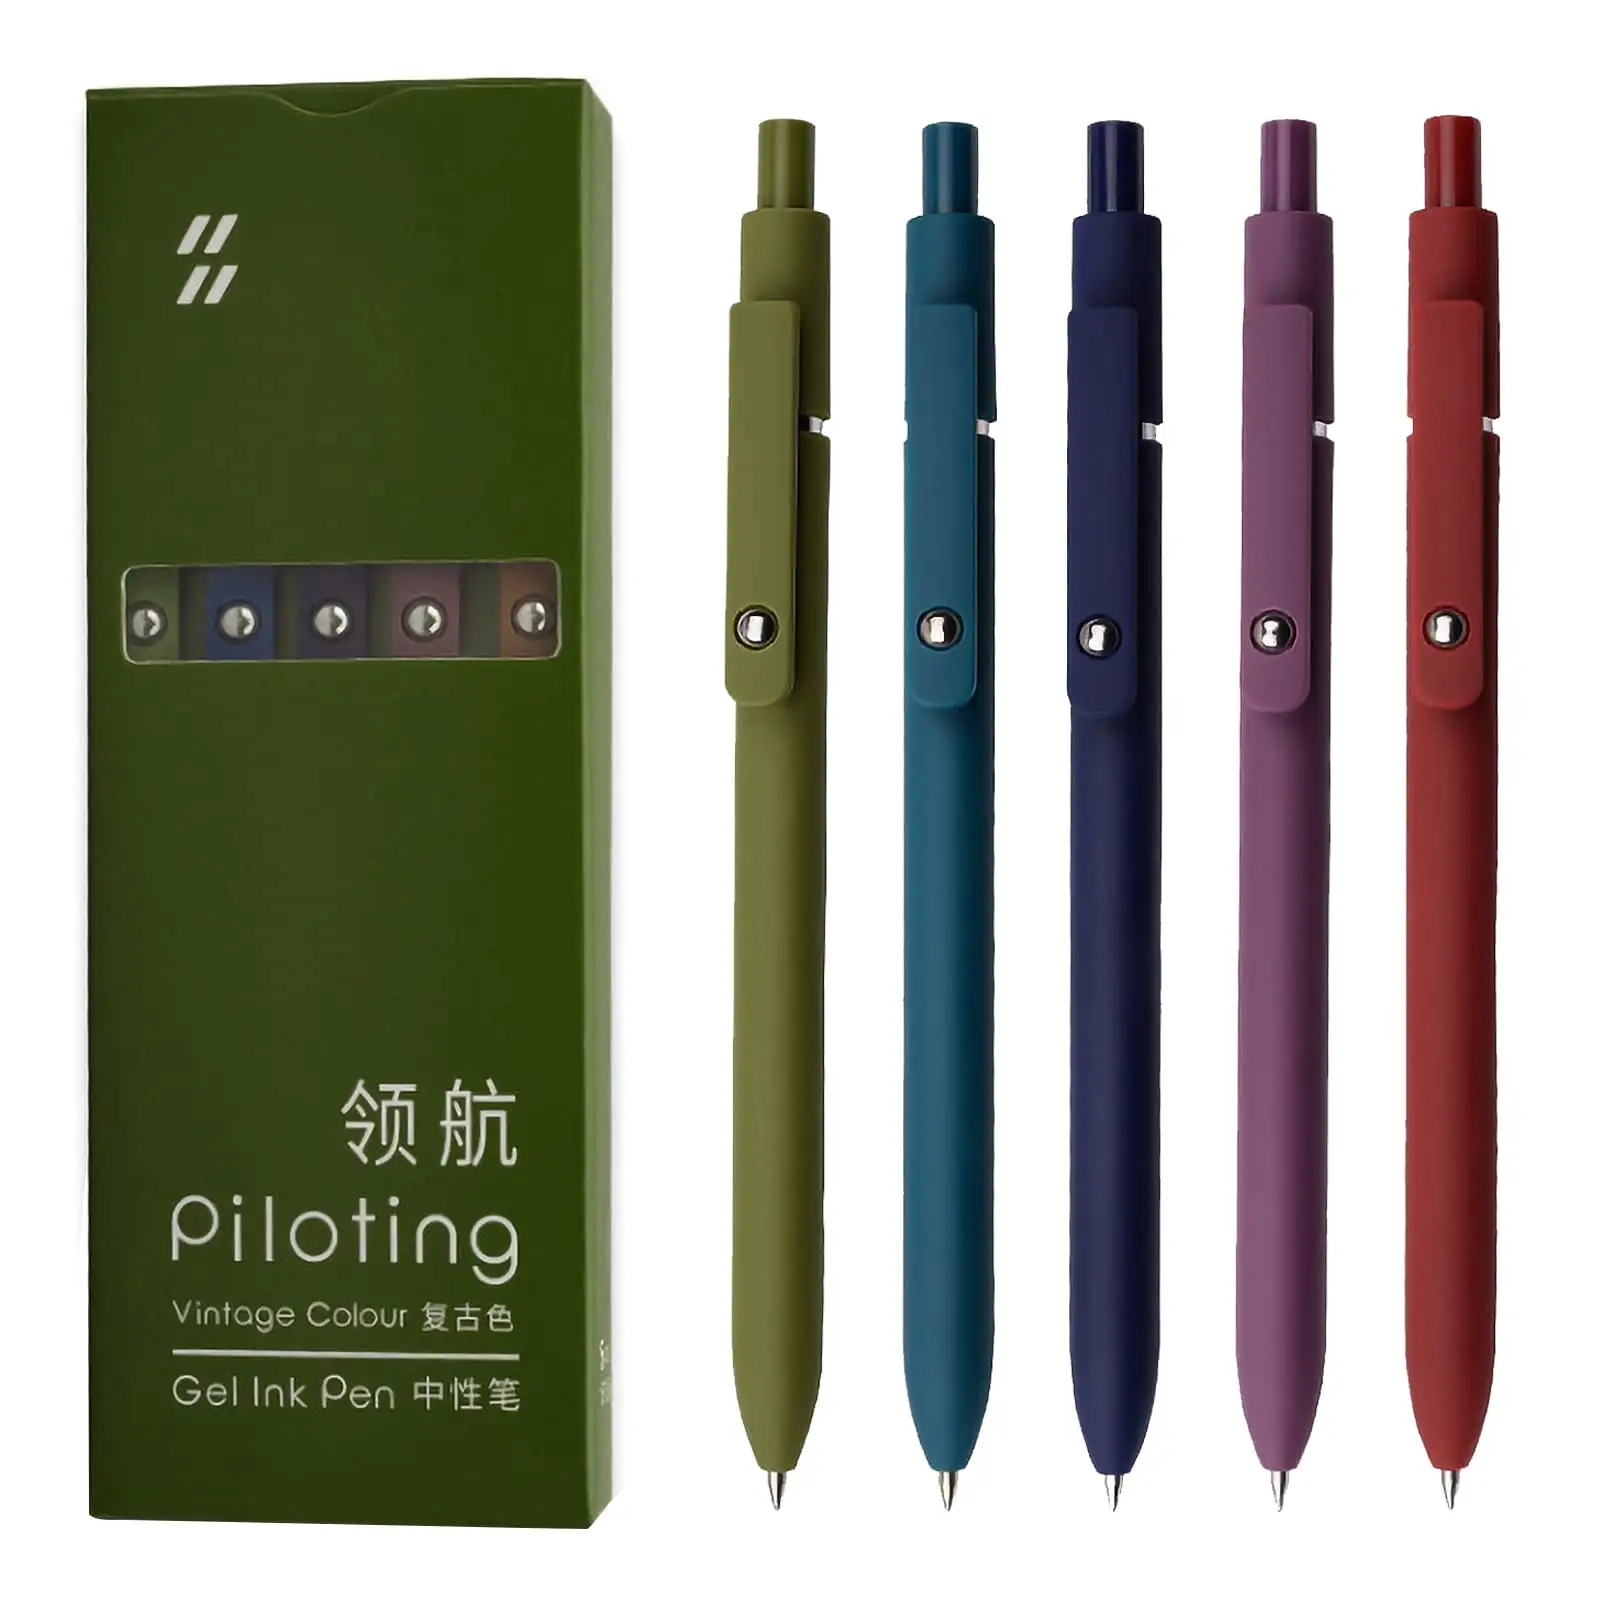 Ручки гелевые, 5 шт., 0,5 мм, черные японские чернильные ручки, тонкая гладкая печать, Высококачественная серия для ведения журнала